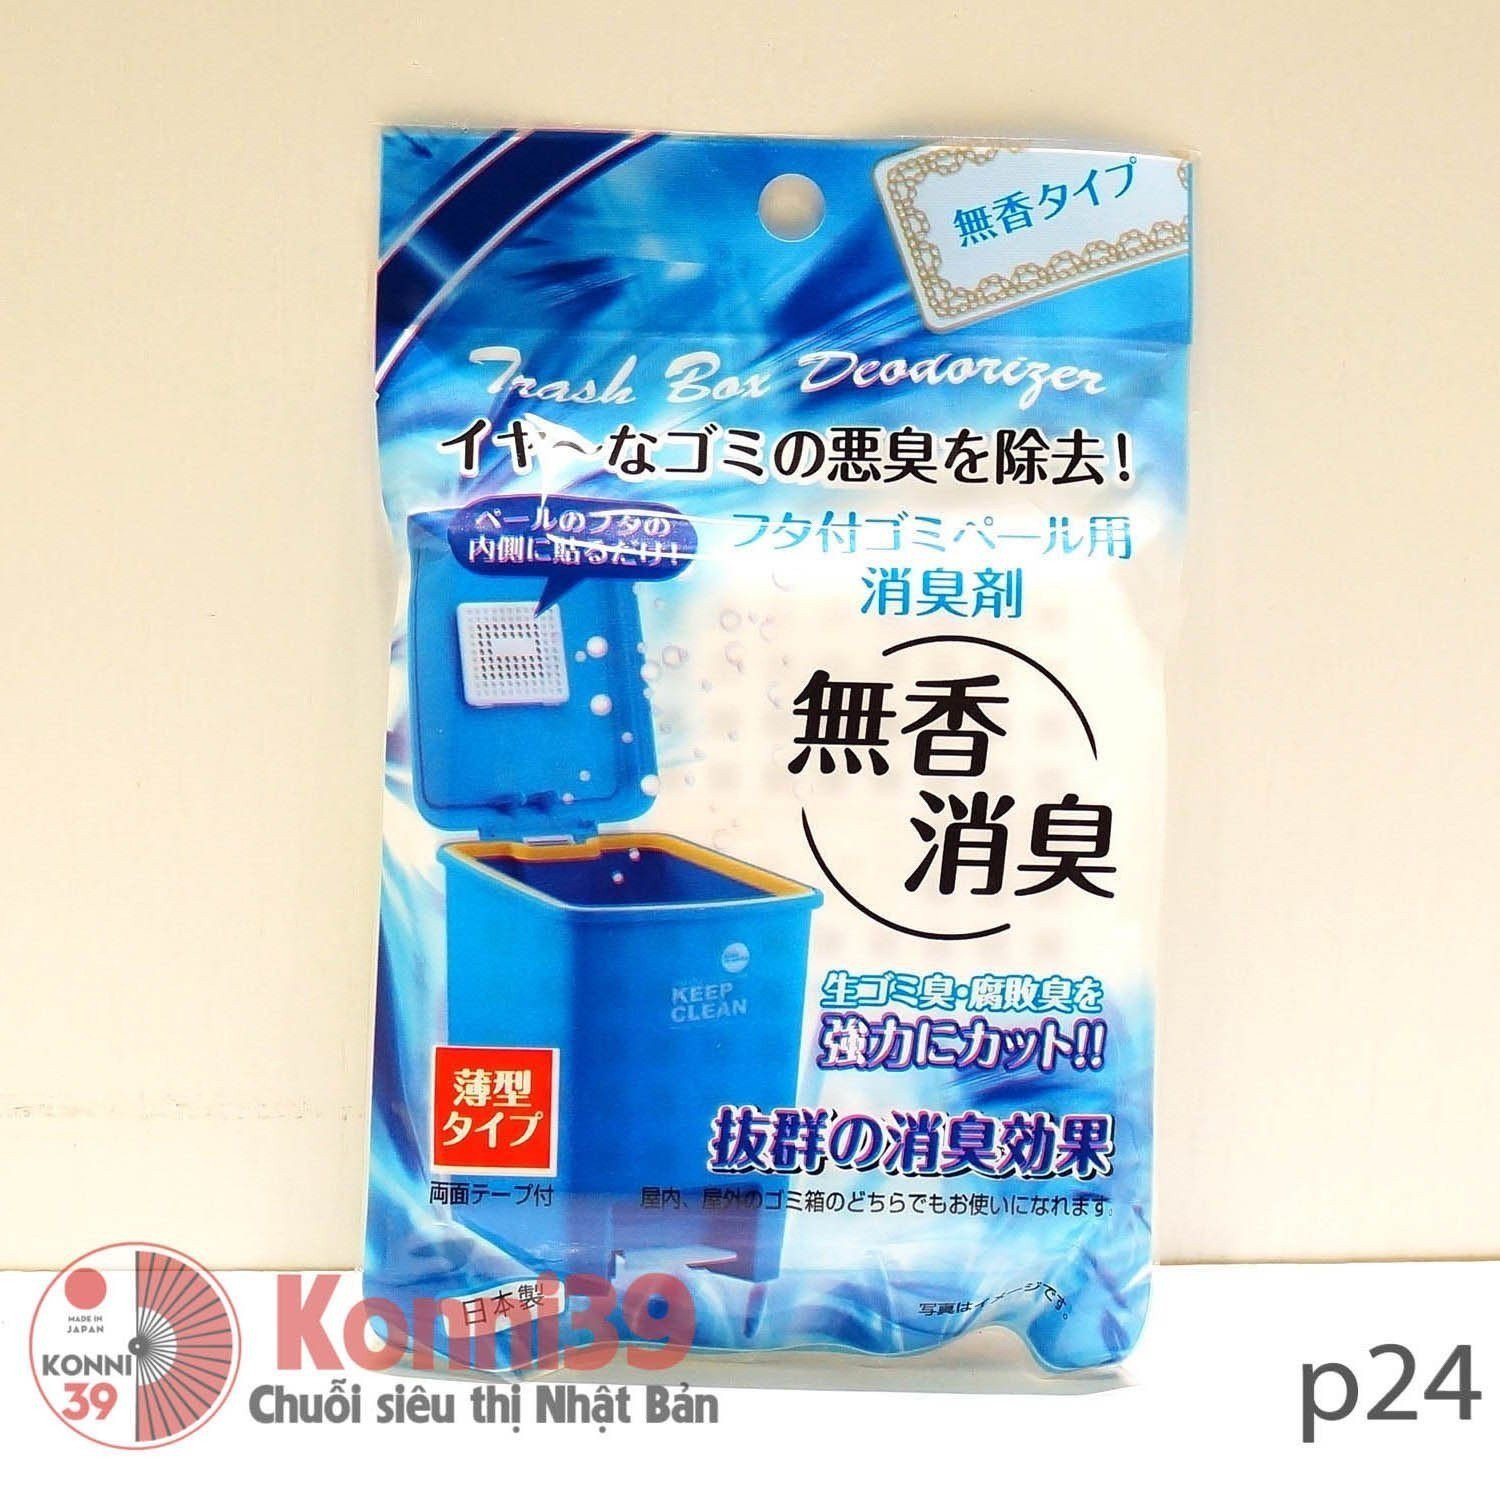 Vỉ dán khử mùi thùng rác SANADA (xanh dương)-hàng đồng giá Nhật Bản - MADE IN JAPAN Konni39 tại Việt Nam